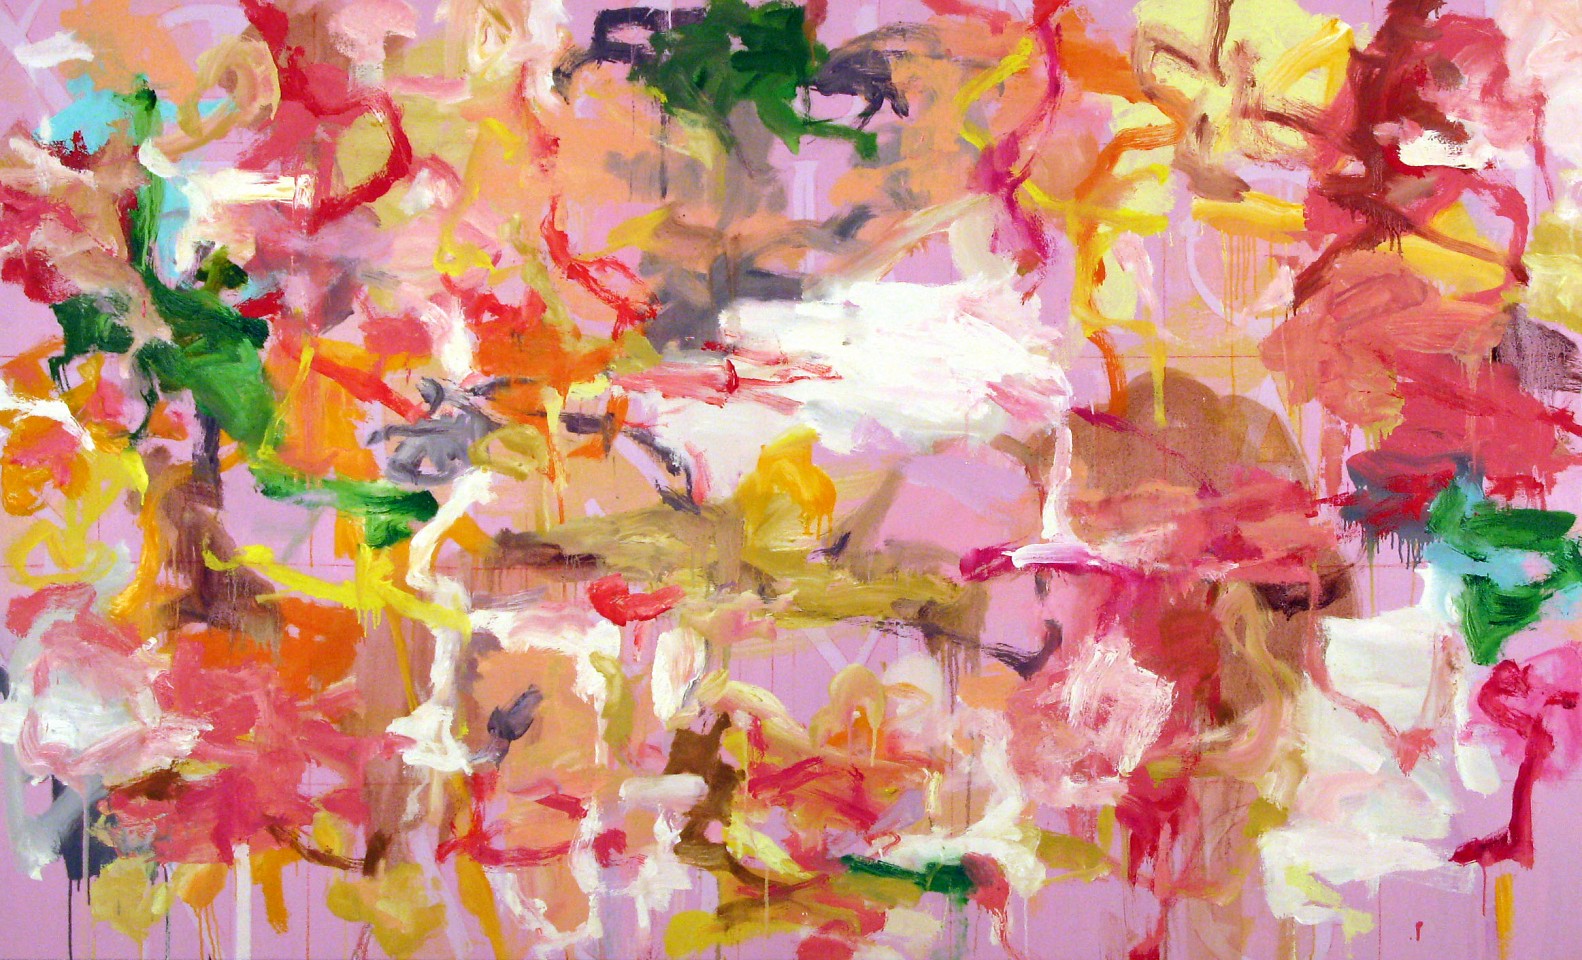 Kikuo Saito, Cerise, 2009
Oil on Canvas, 45 3/4 x 75 3/4 inches
SAIT0004